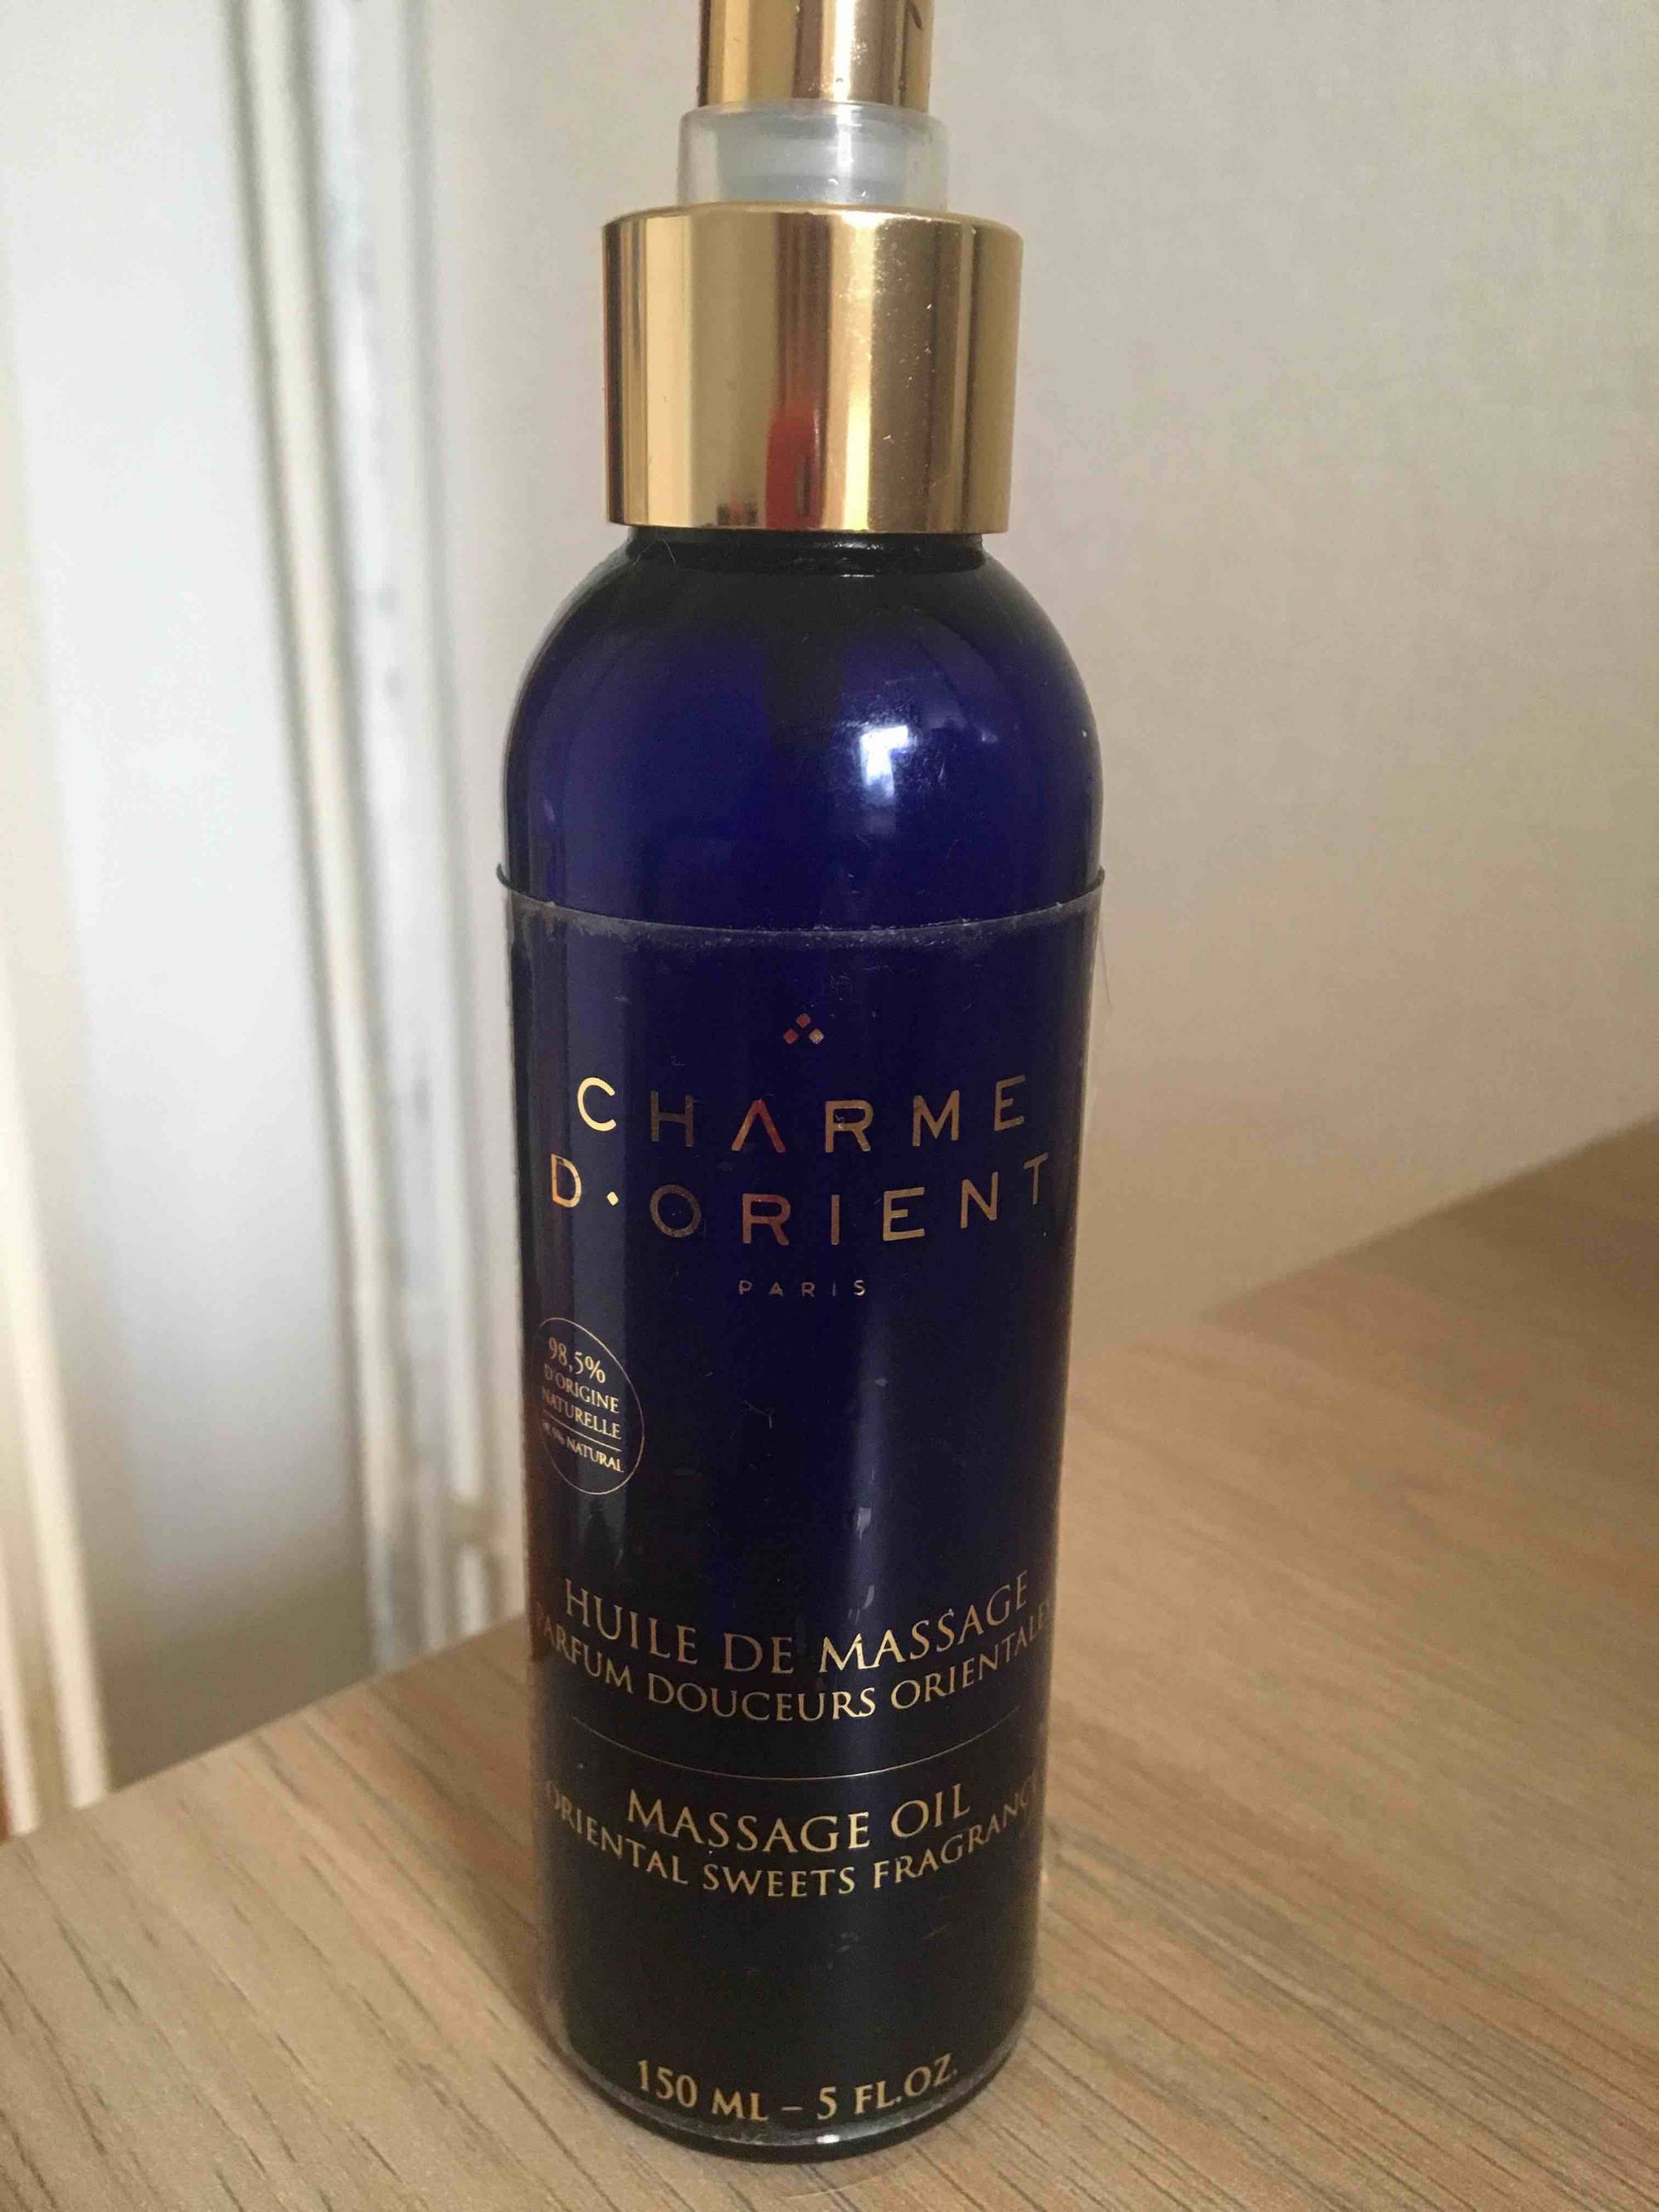 CHARME D'ORIENT - Huile de massage parfum douceurs orientales